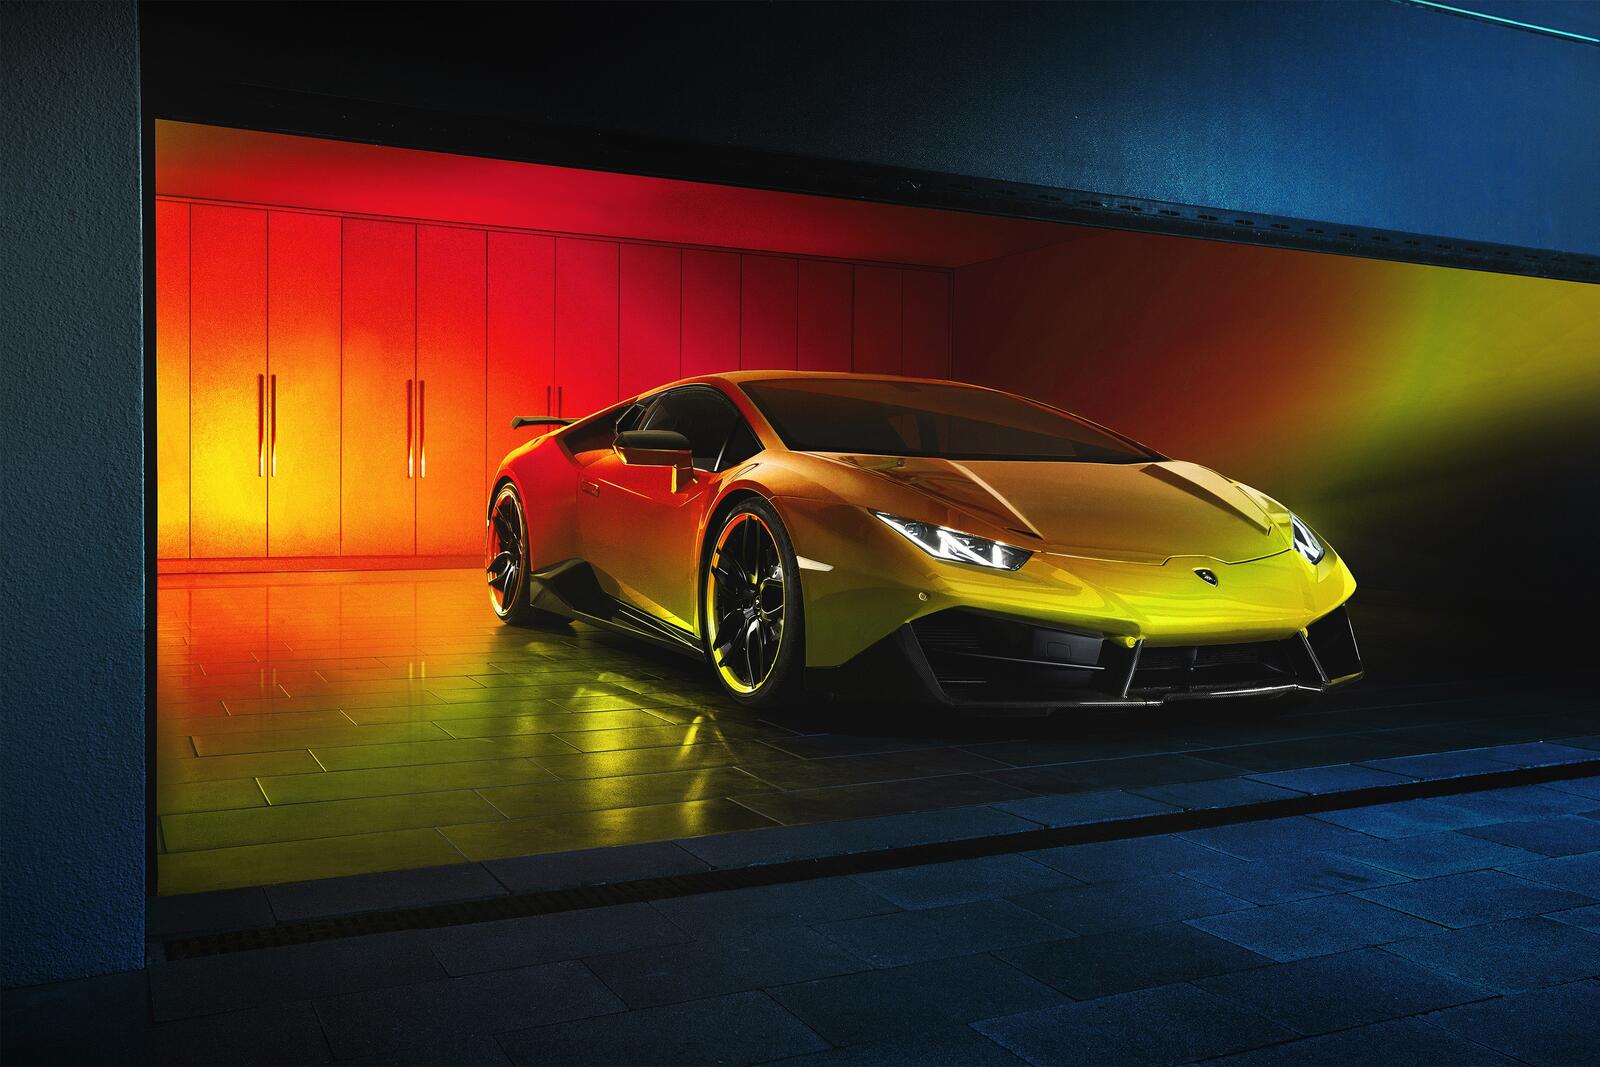 Free photo A yellow Lamborghini in a big garage